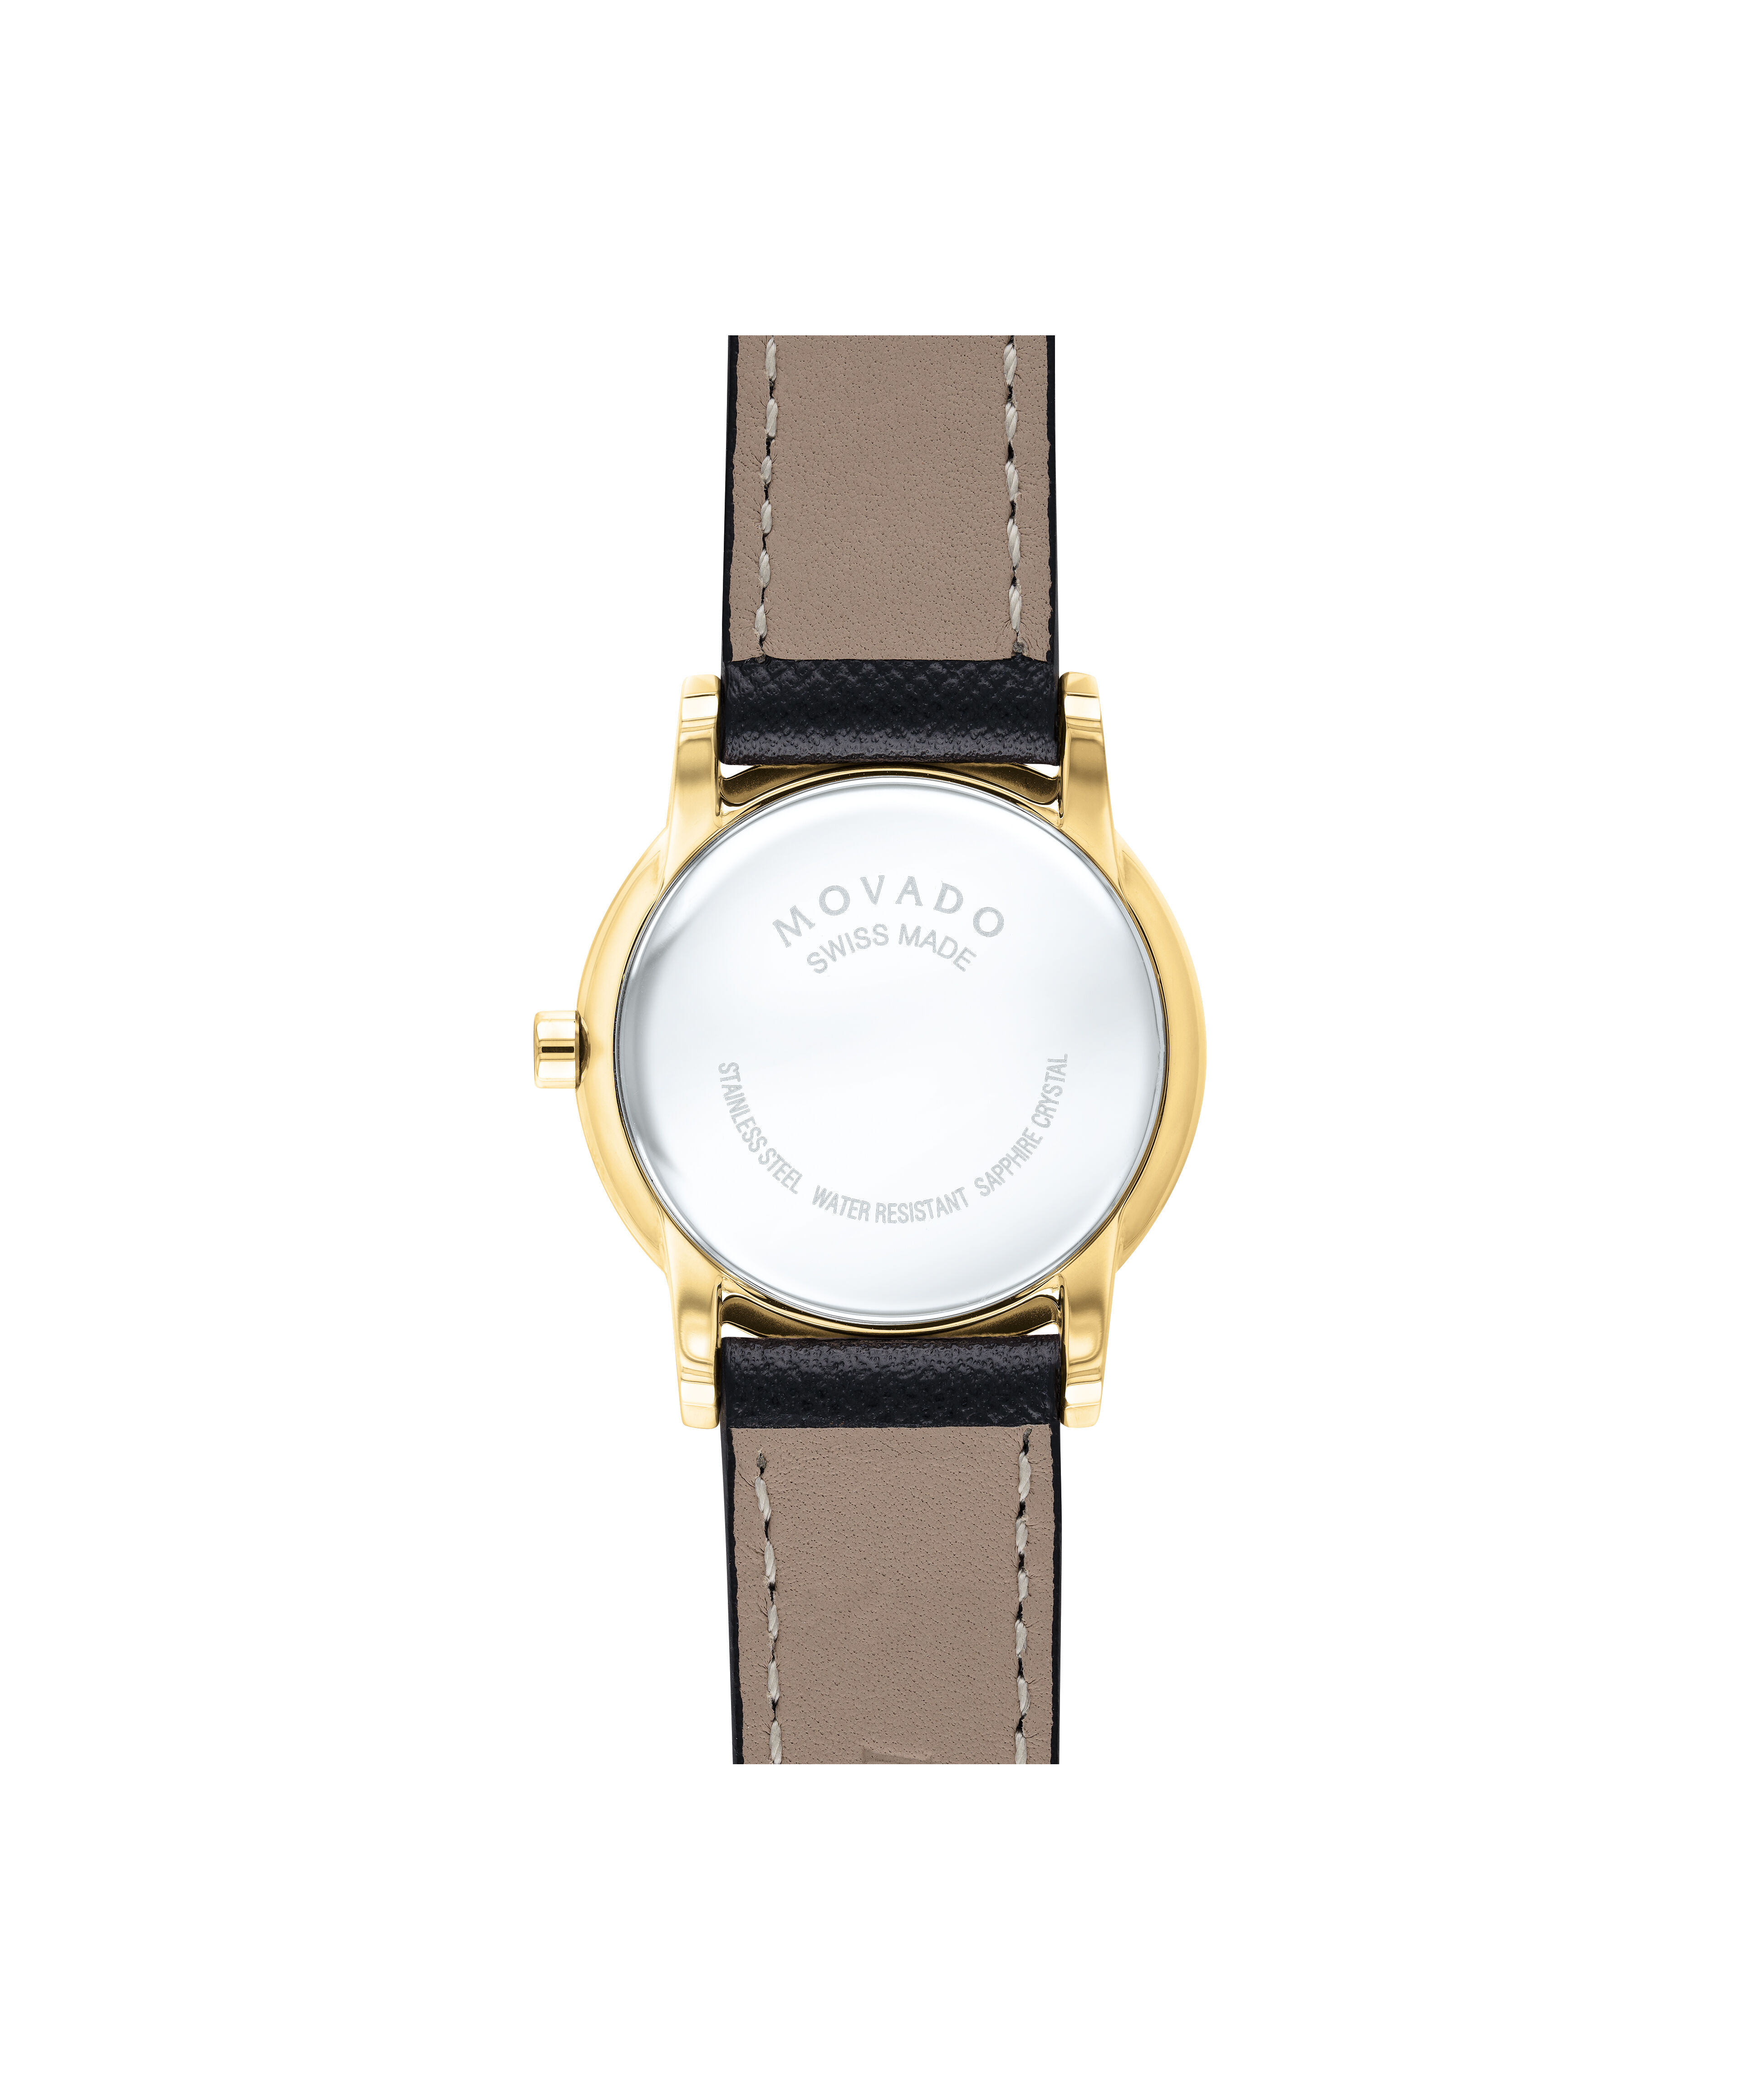 Movado 1881 Suisses. Reloj Automático de Complicación de caballero. Serie Limitada. Oro 18k.Movado Leather Bracelet Bracelet Leather Bracelet 12mm